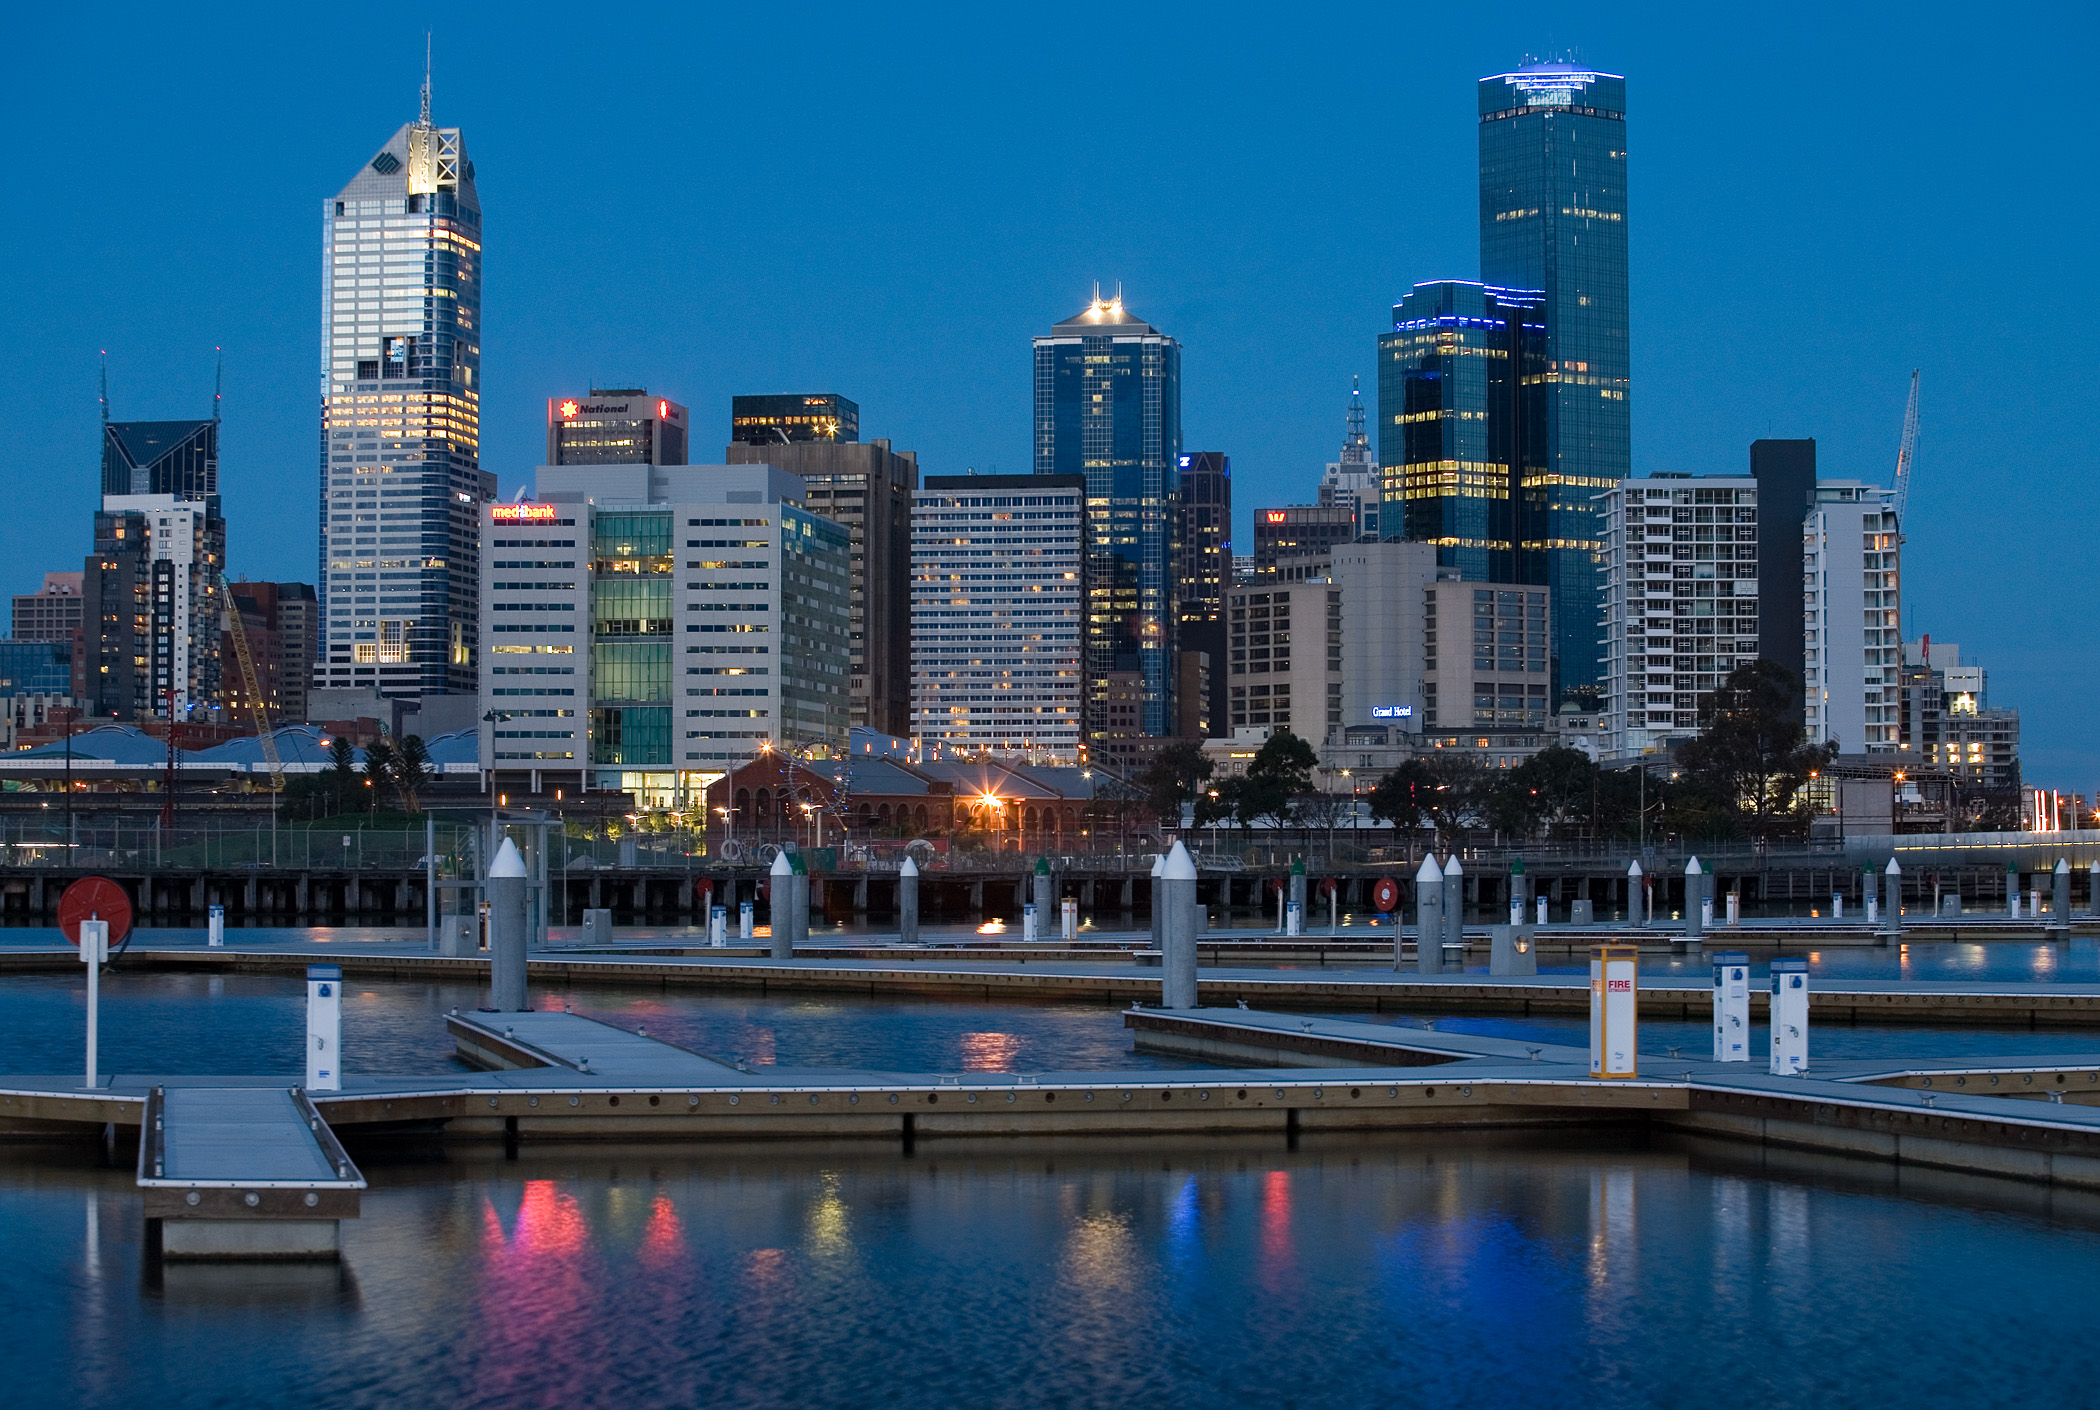 Melbourne_docklands_twilight.jpg